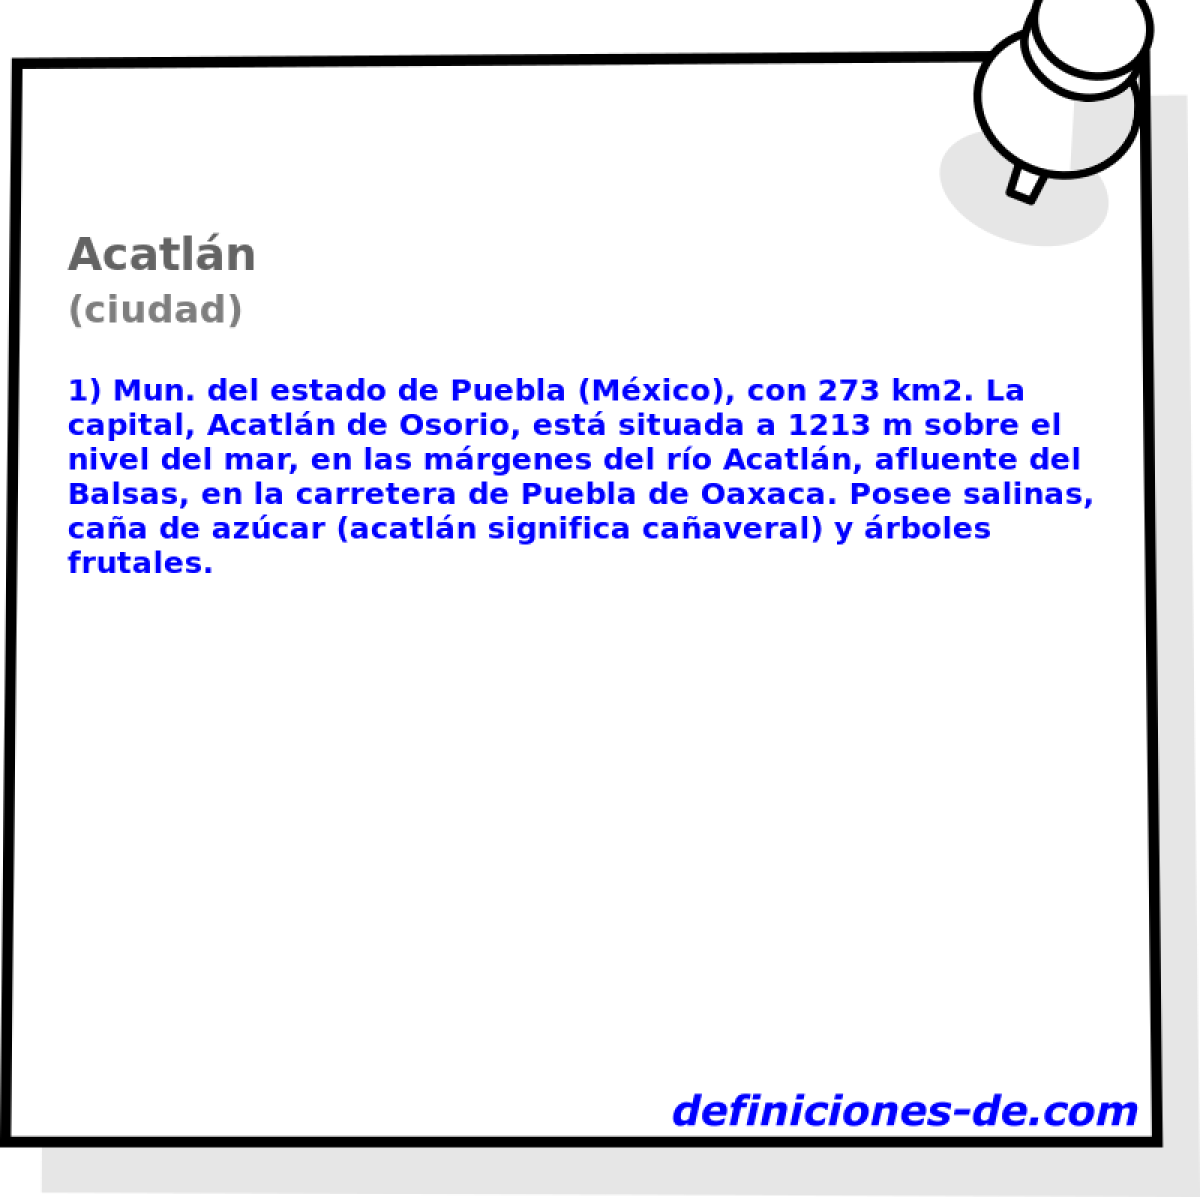 Acatln (ciudad)